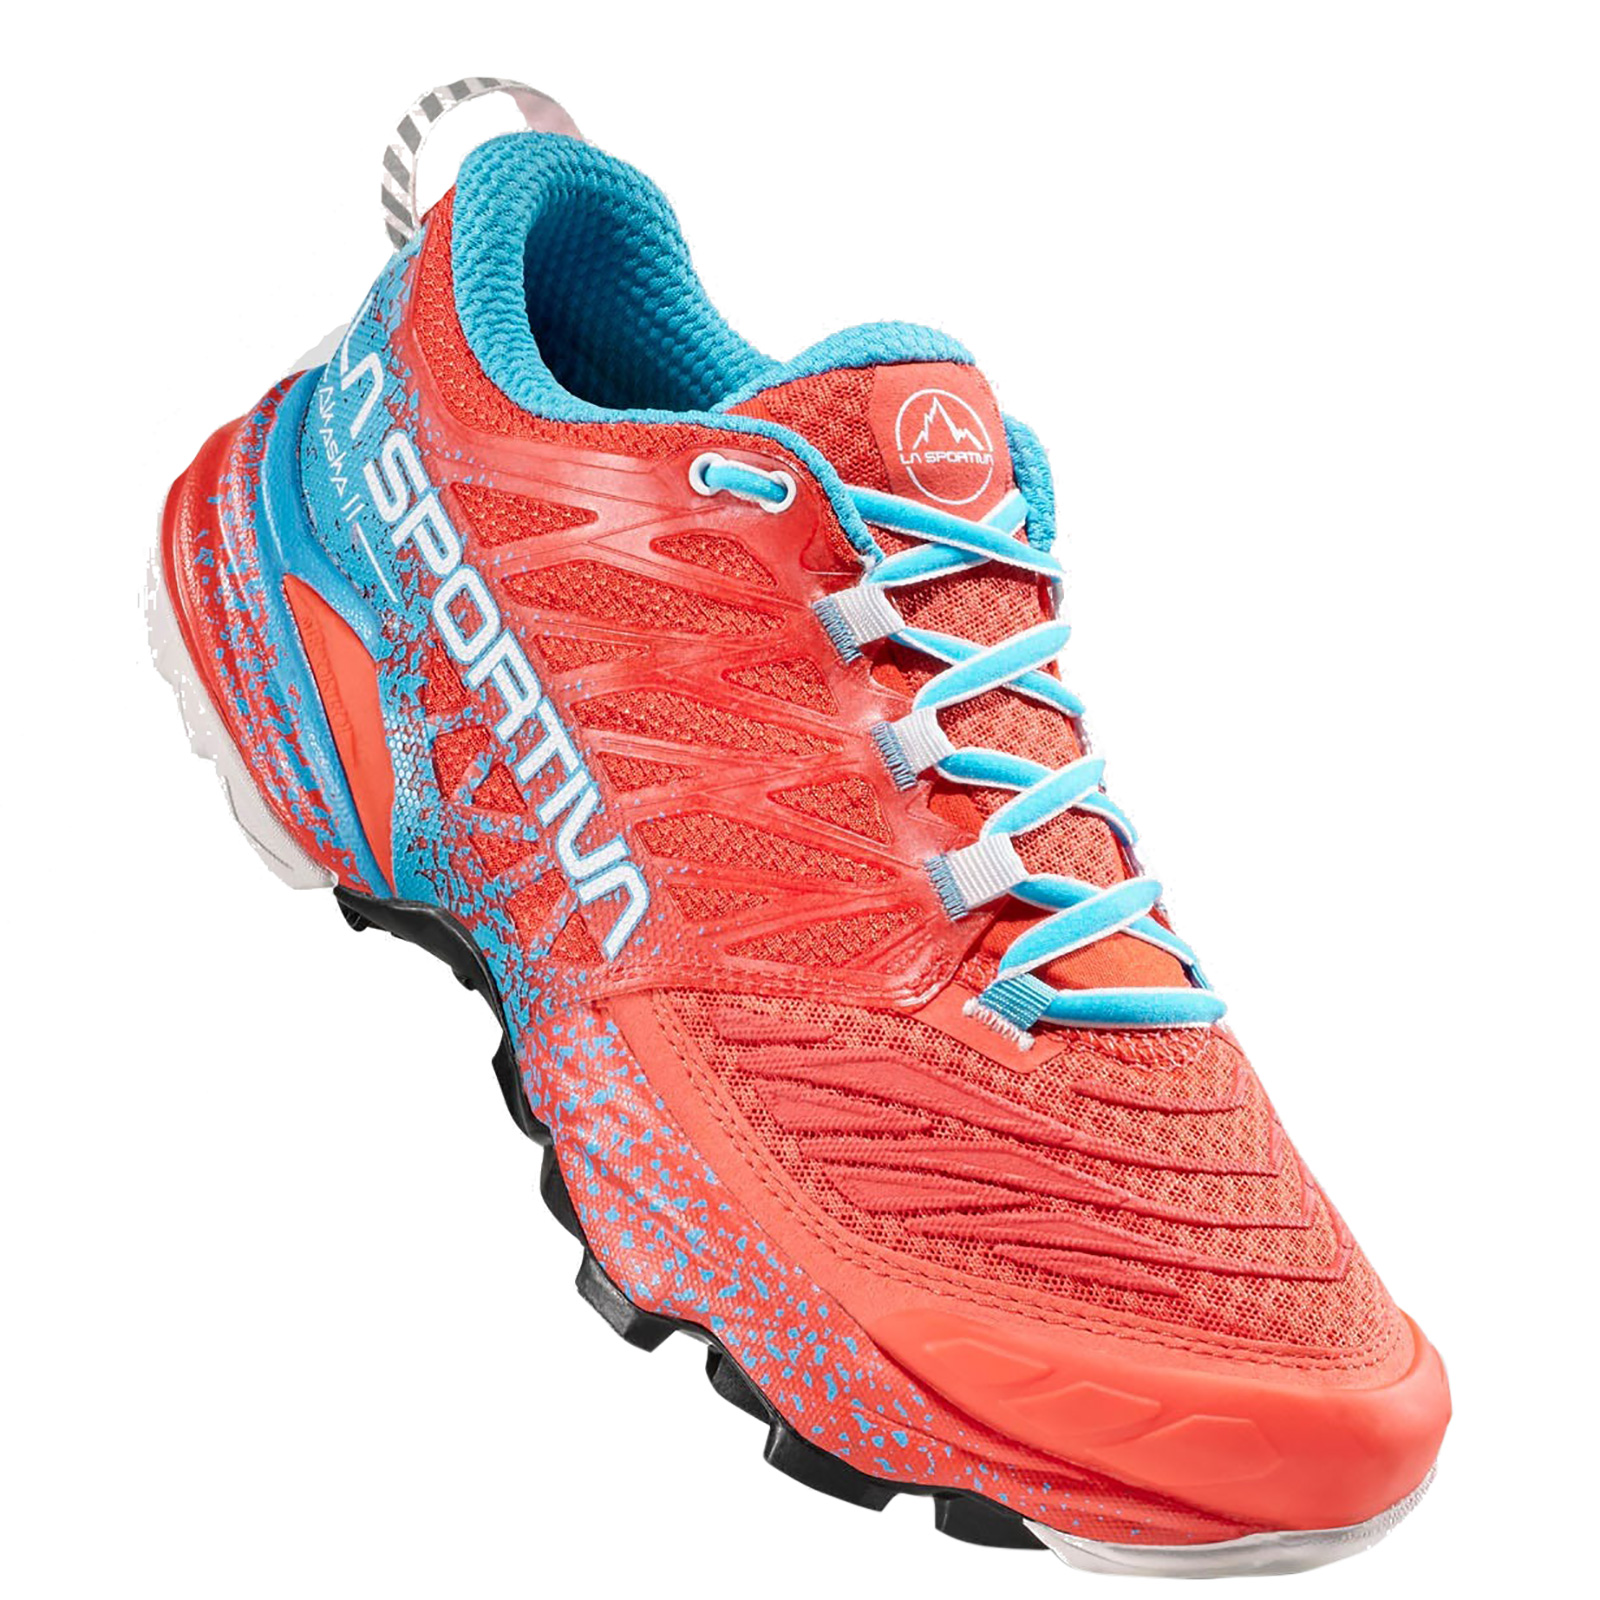 Giày chạy bộ nữ La Sportiva Running Shoes Akasha II 56B402612